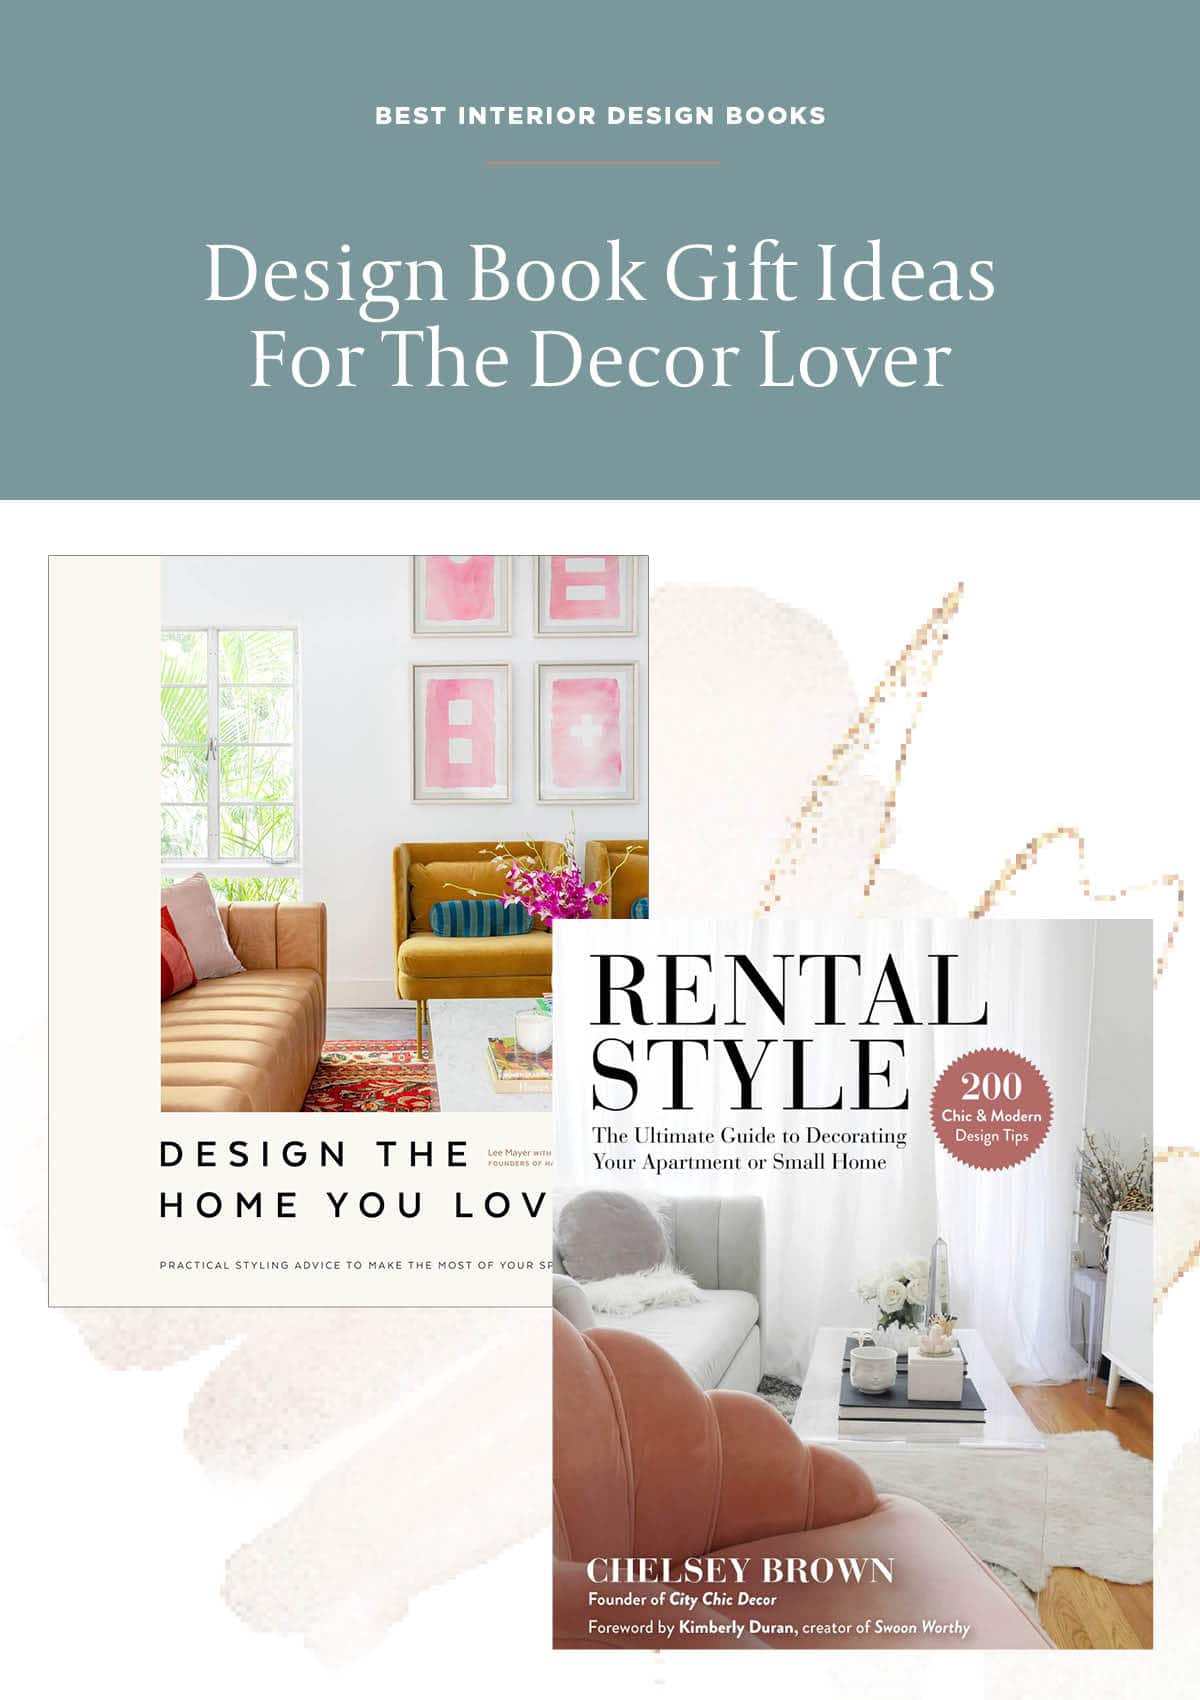 The Best Interior Design Books of 2021